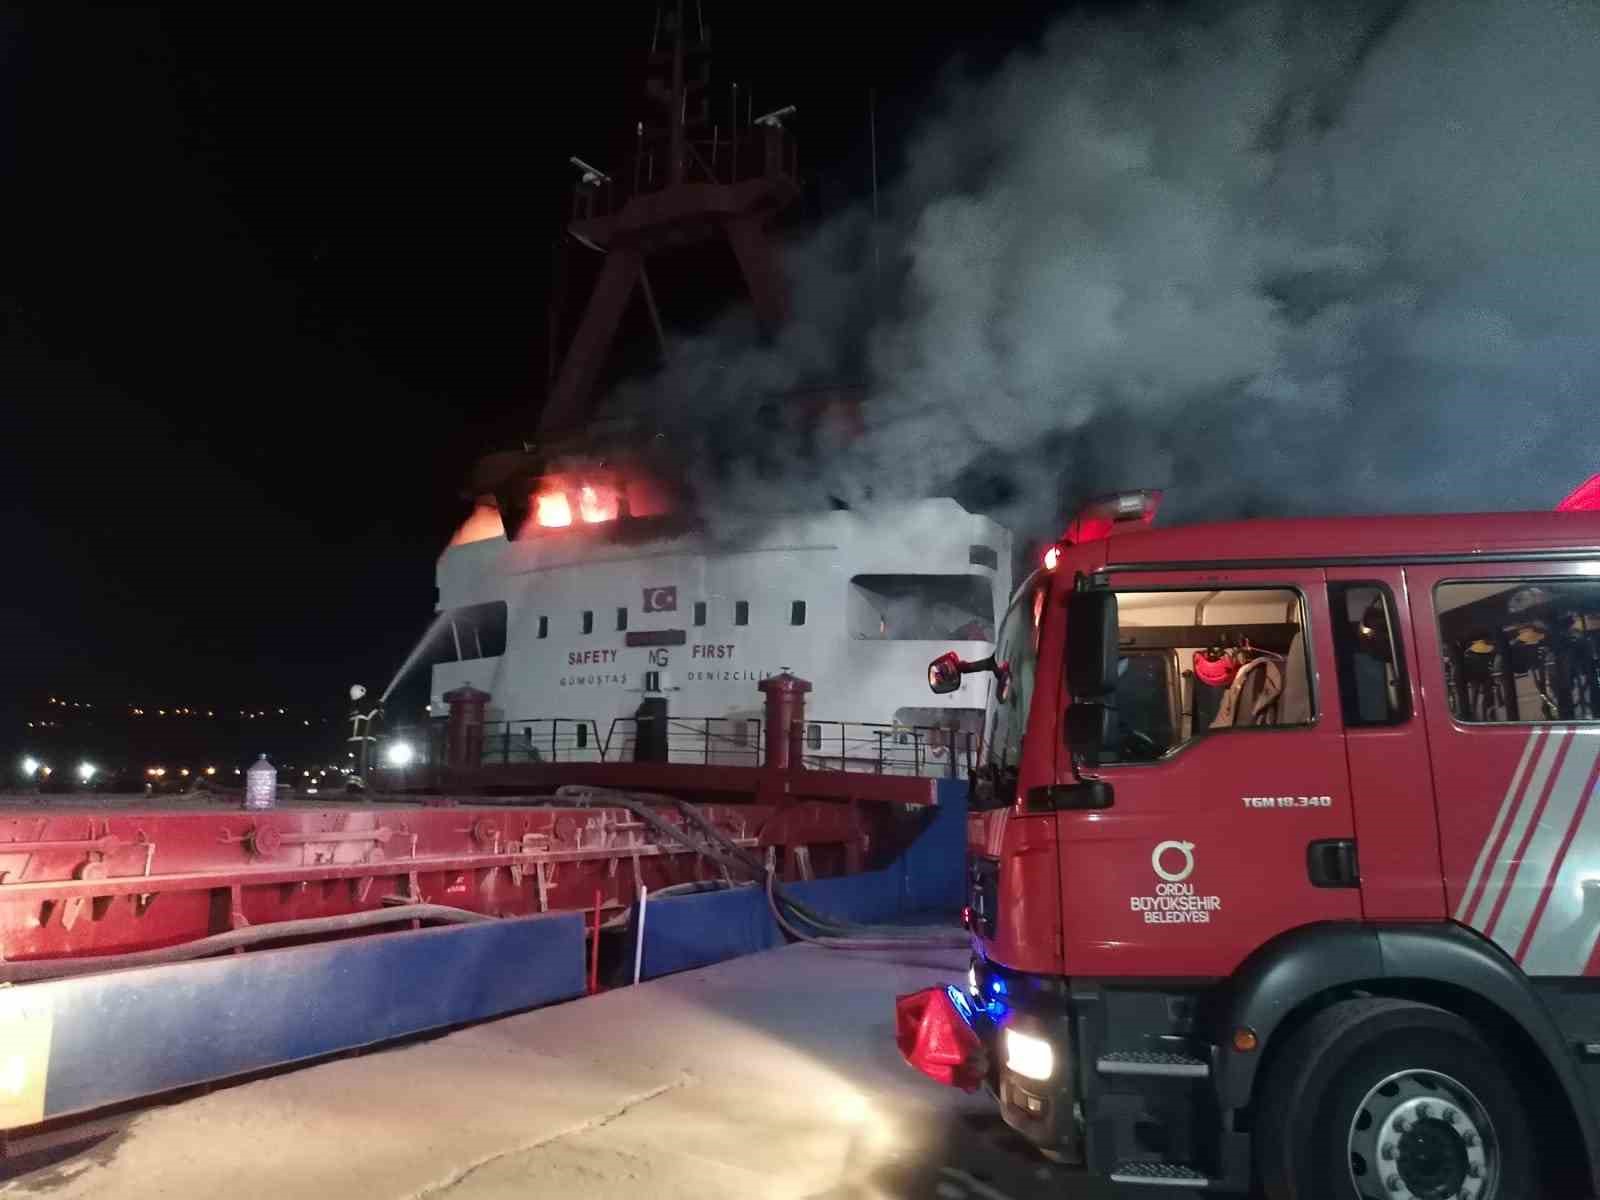 Ordu’da çimento yüklü gemi alevler içinde kaldı: 1 vatandaş dumandan etkilendi
